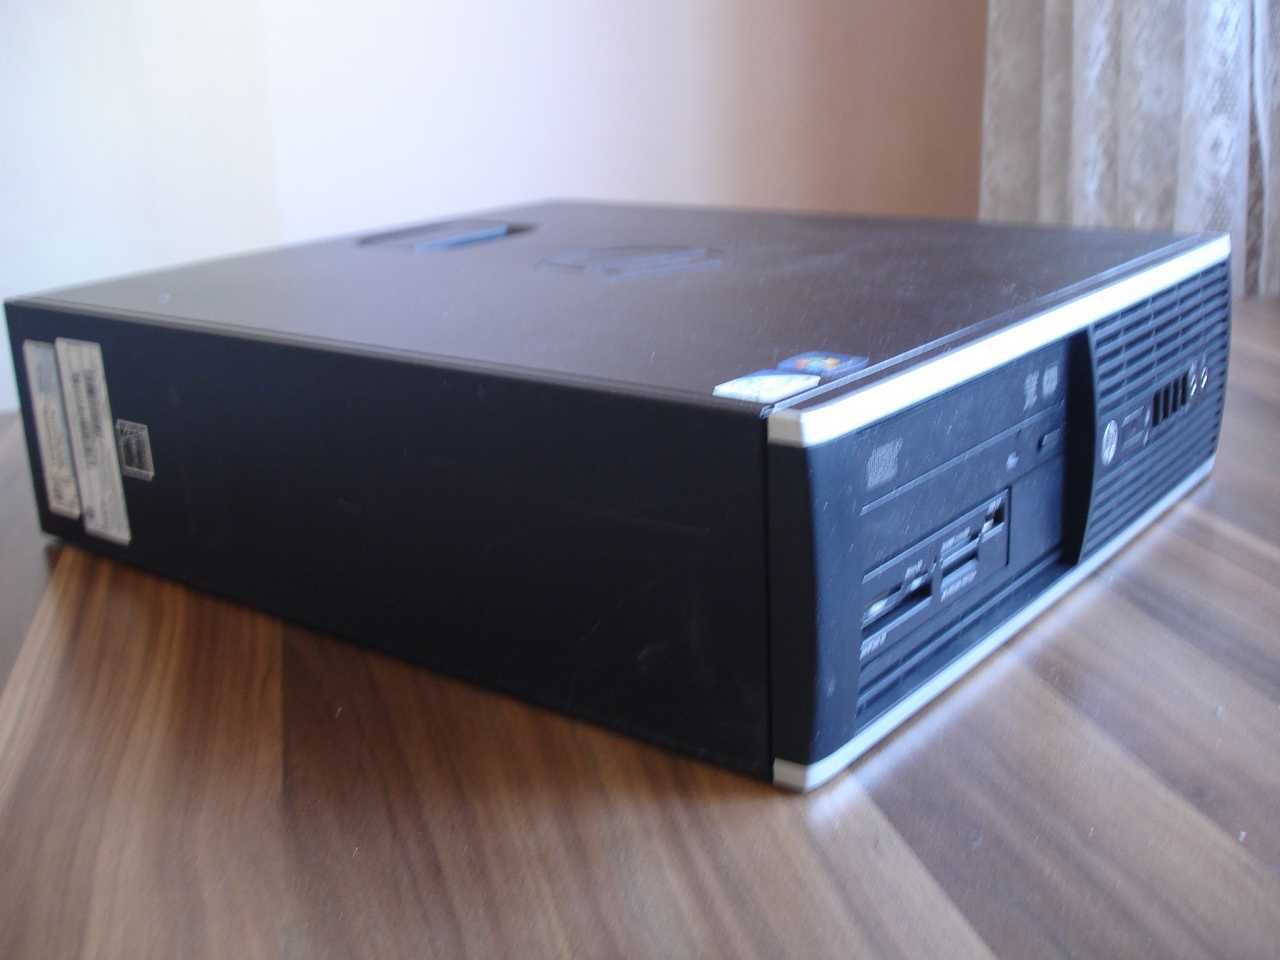 HP Compact 6200 Pro - марков настолен компютър